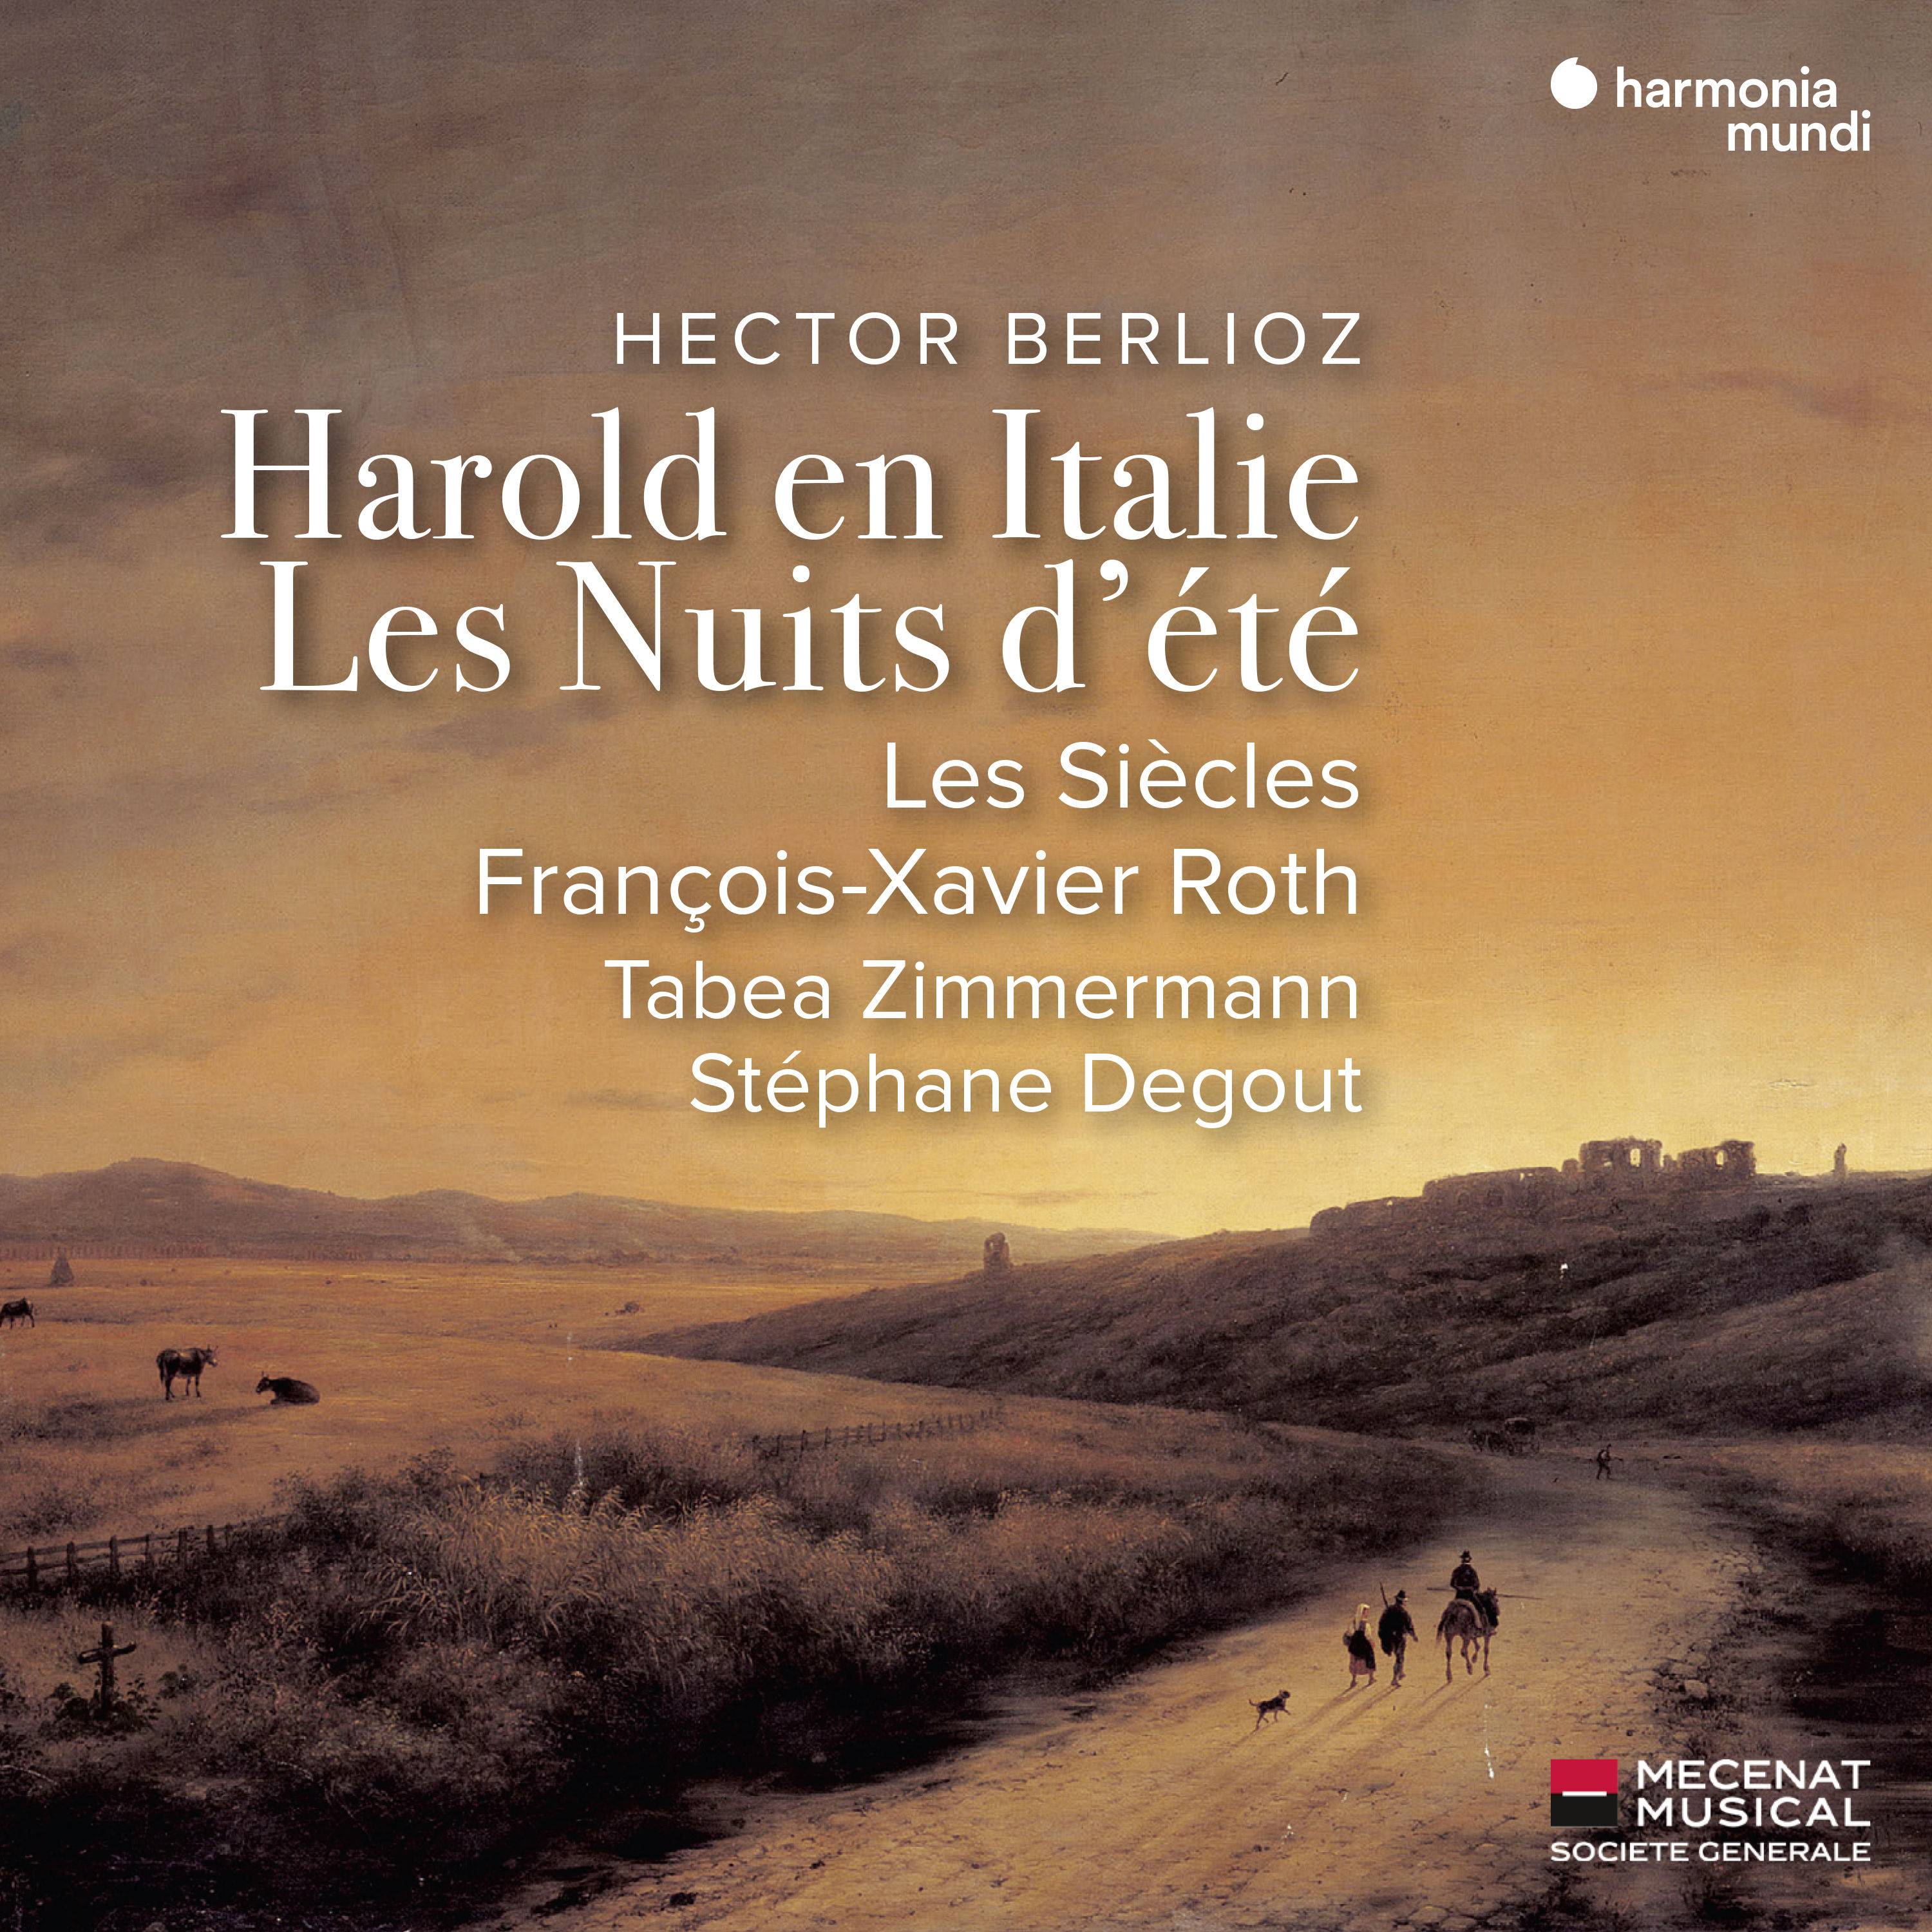 Les Siecles - Hector Berlioz: Harold en Italie, Les Nuits d’ete (2019) [FLAC 24bit/48kHz]